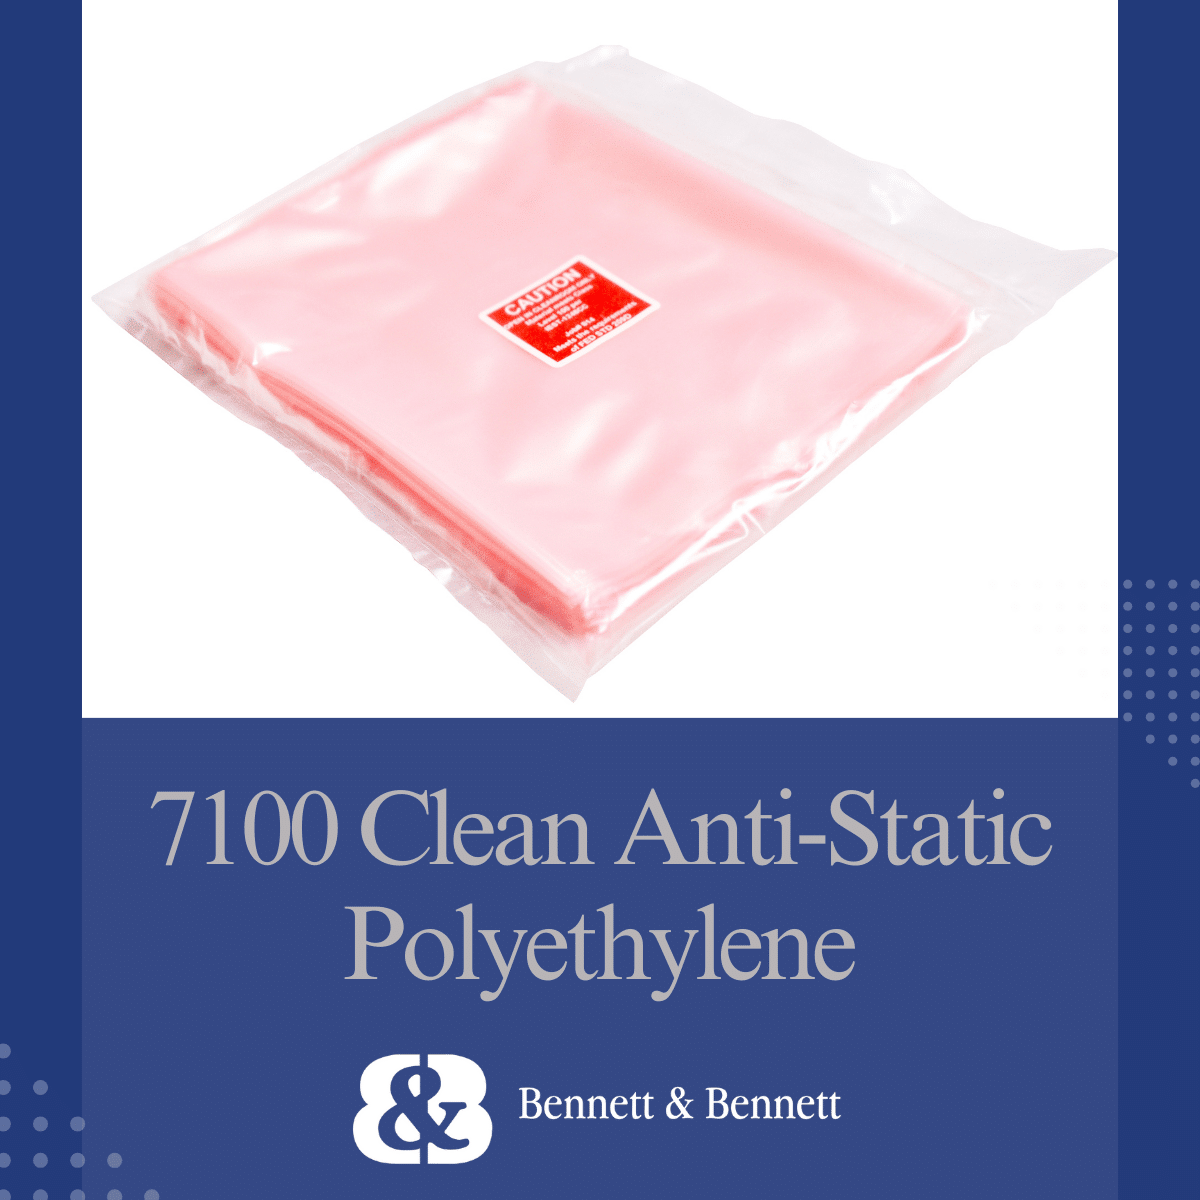 7100 Clean Anti-Static Polyethylene Cleanroom Packaging